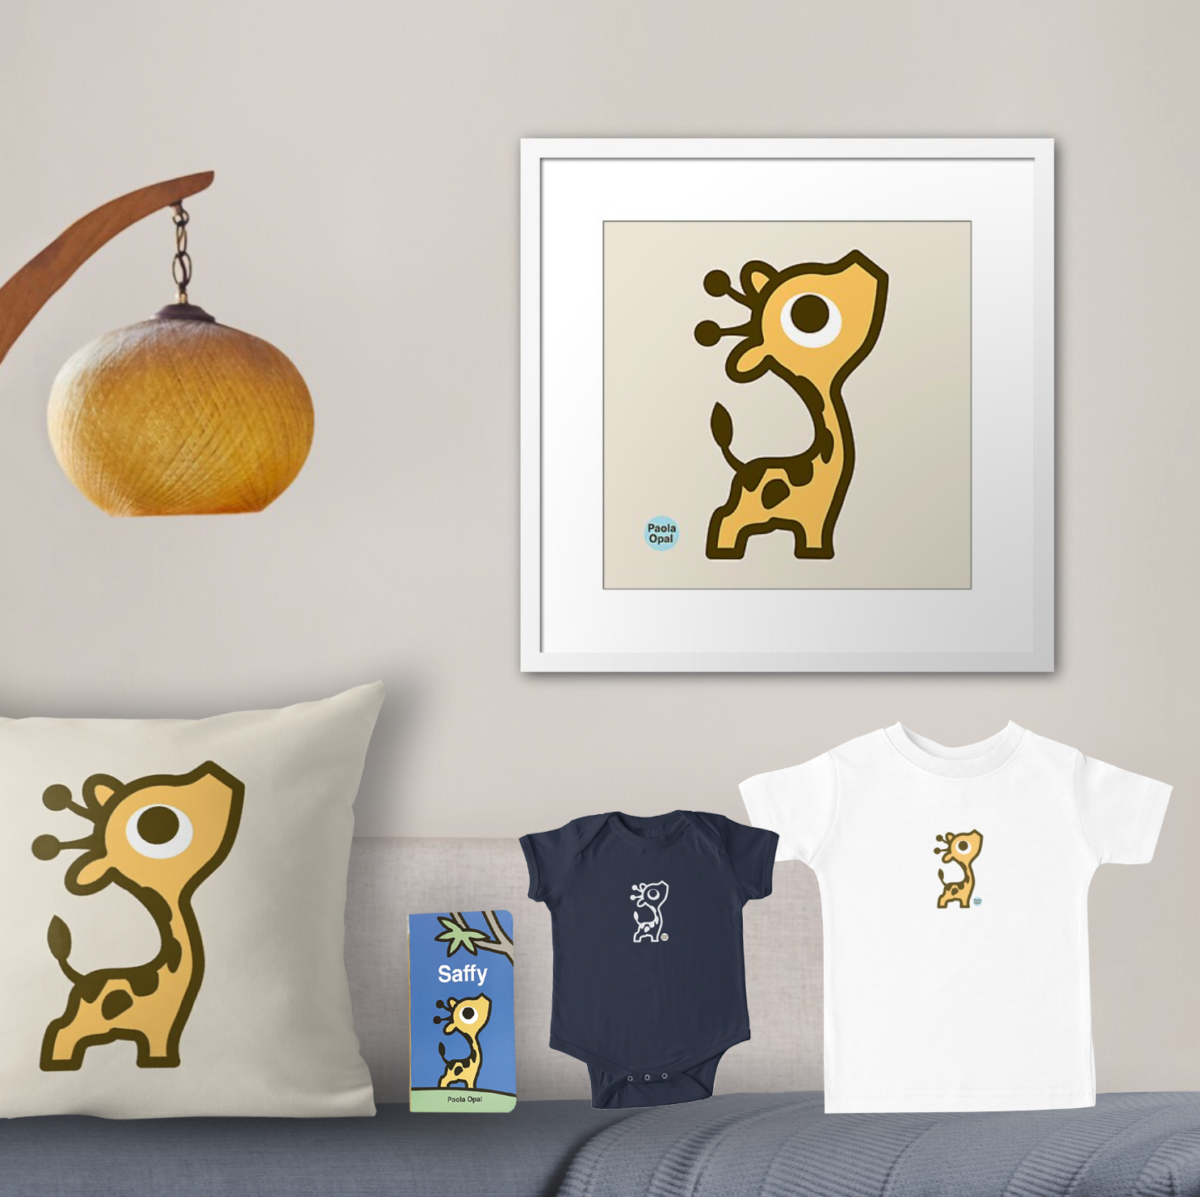 Saffy framed art print, pillow, book, baby onesie and t-shirt